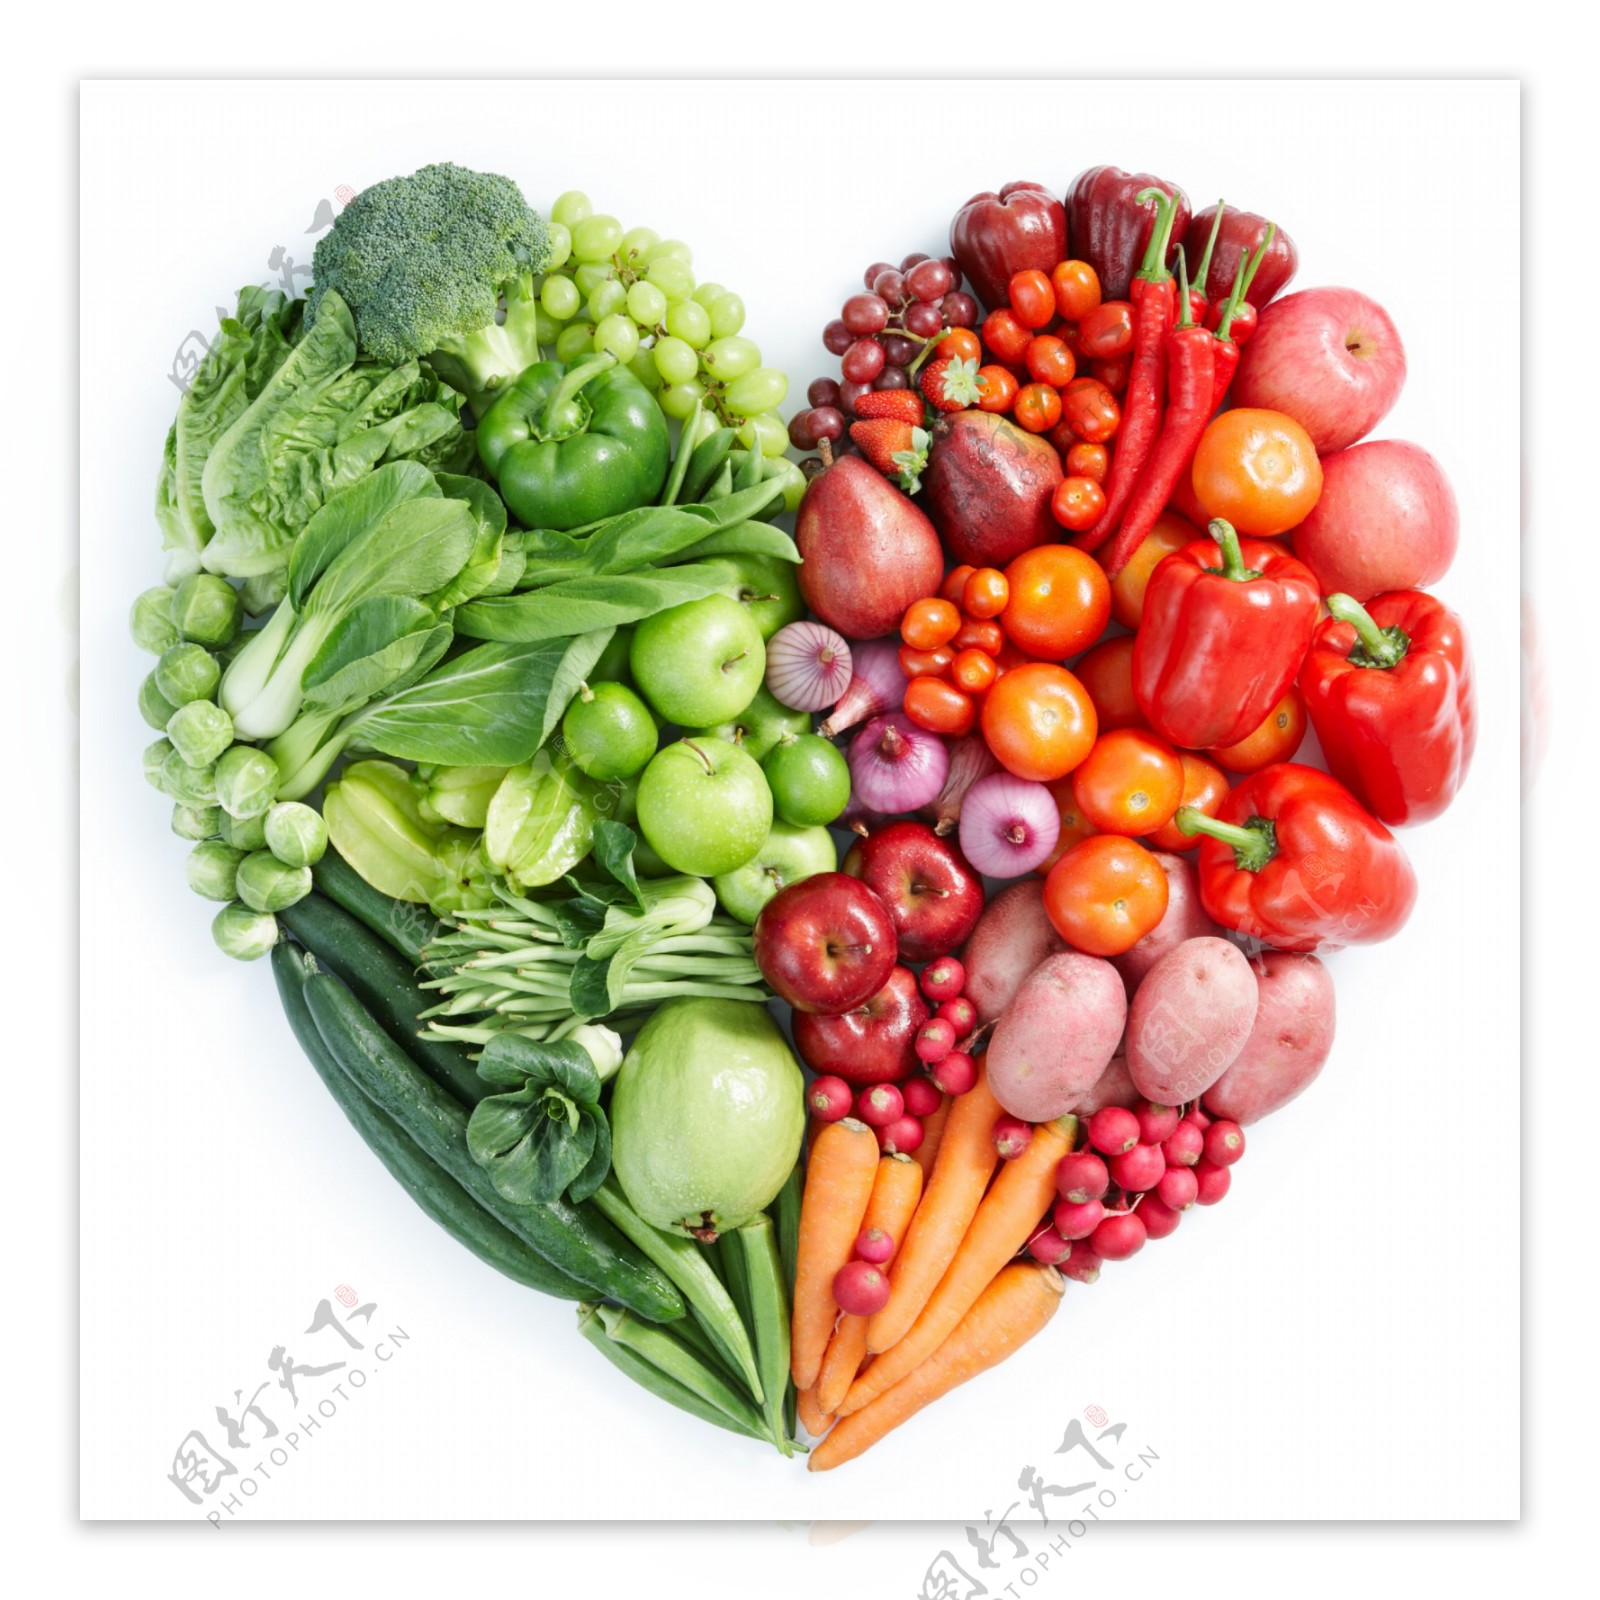 心形蔬菜水果高清图片